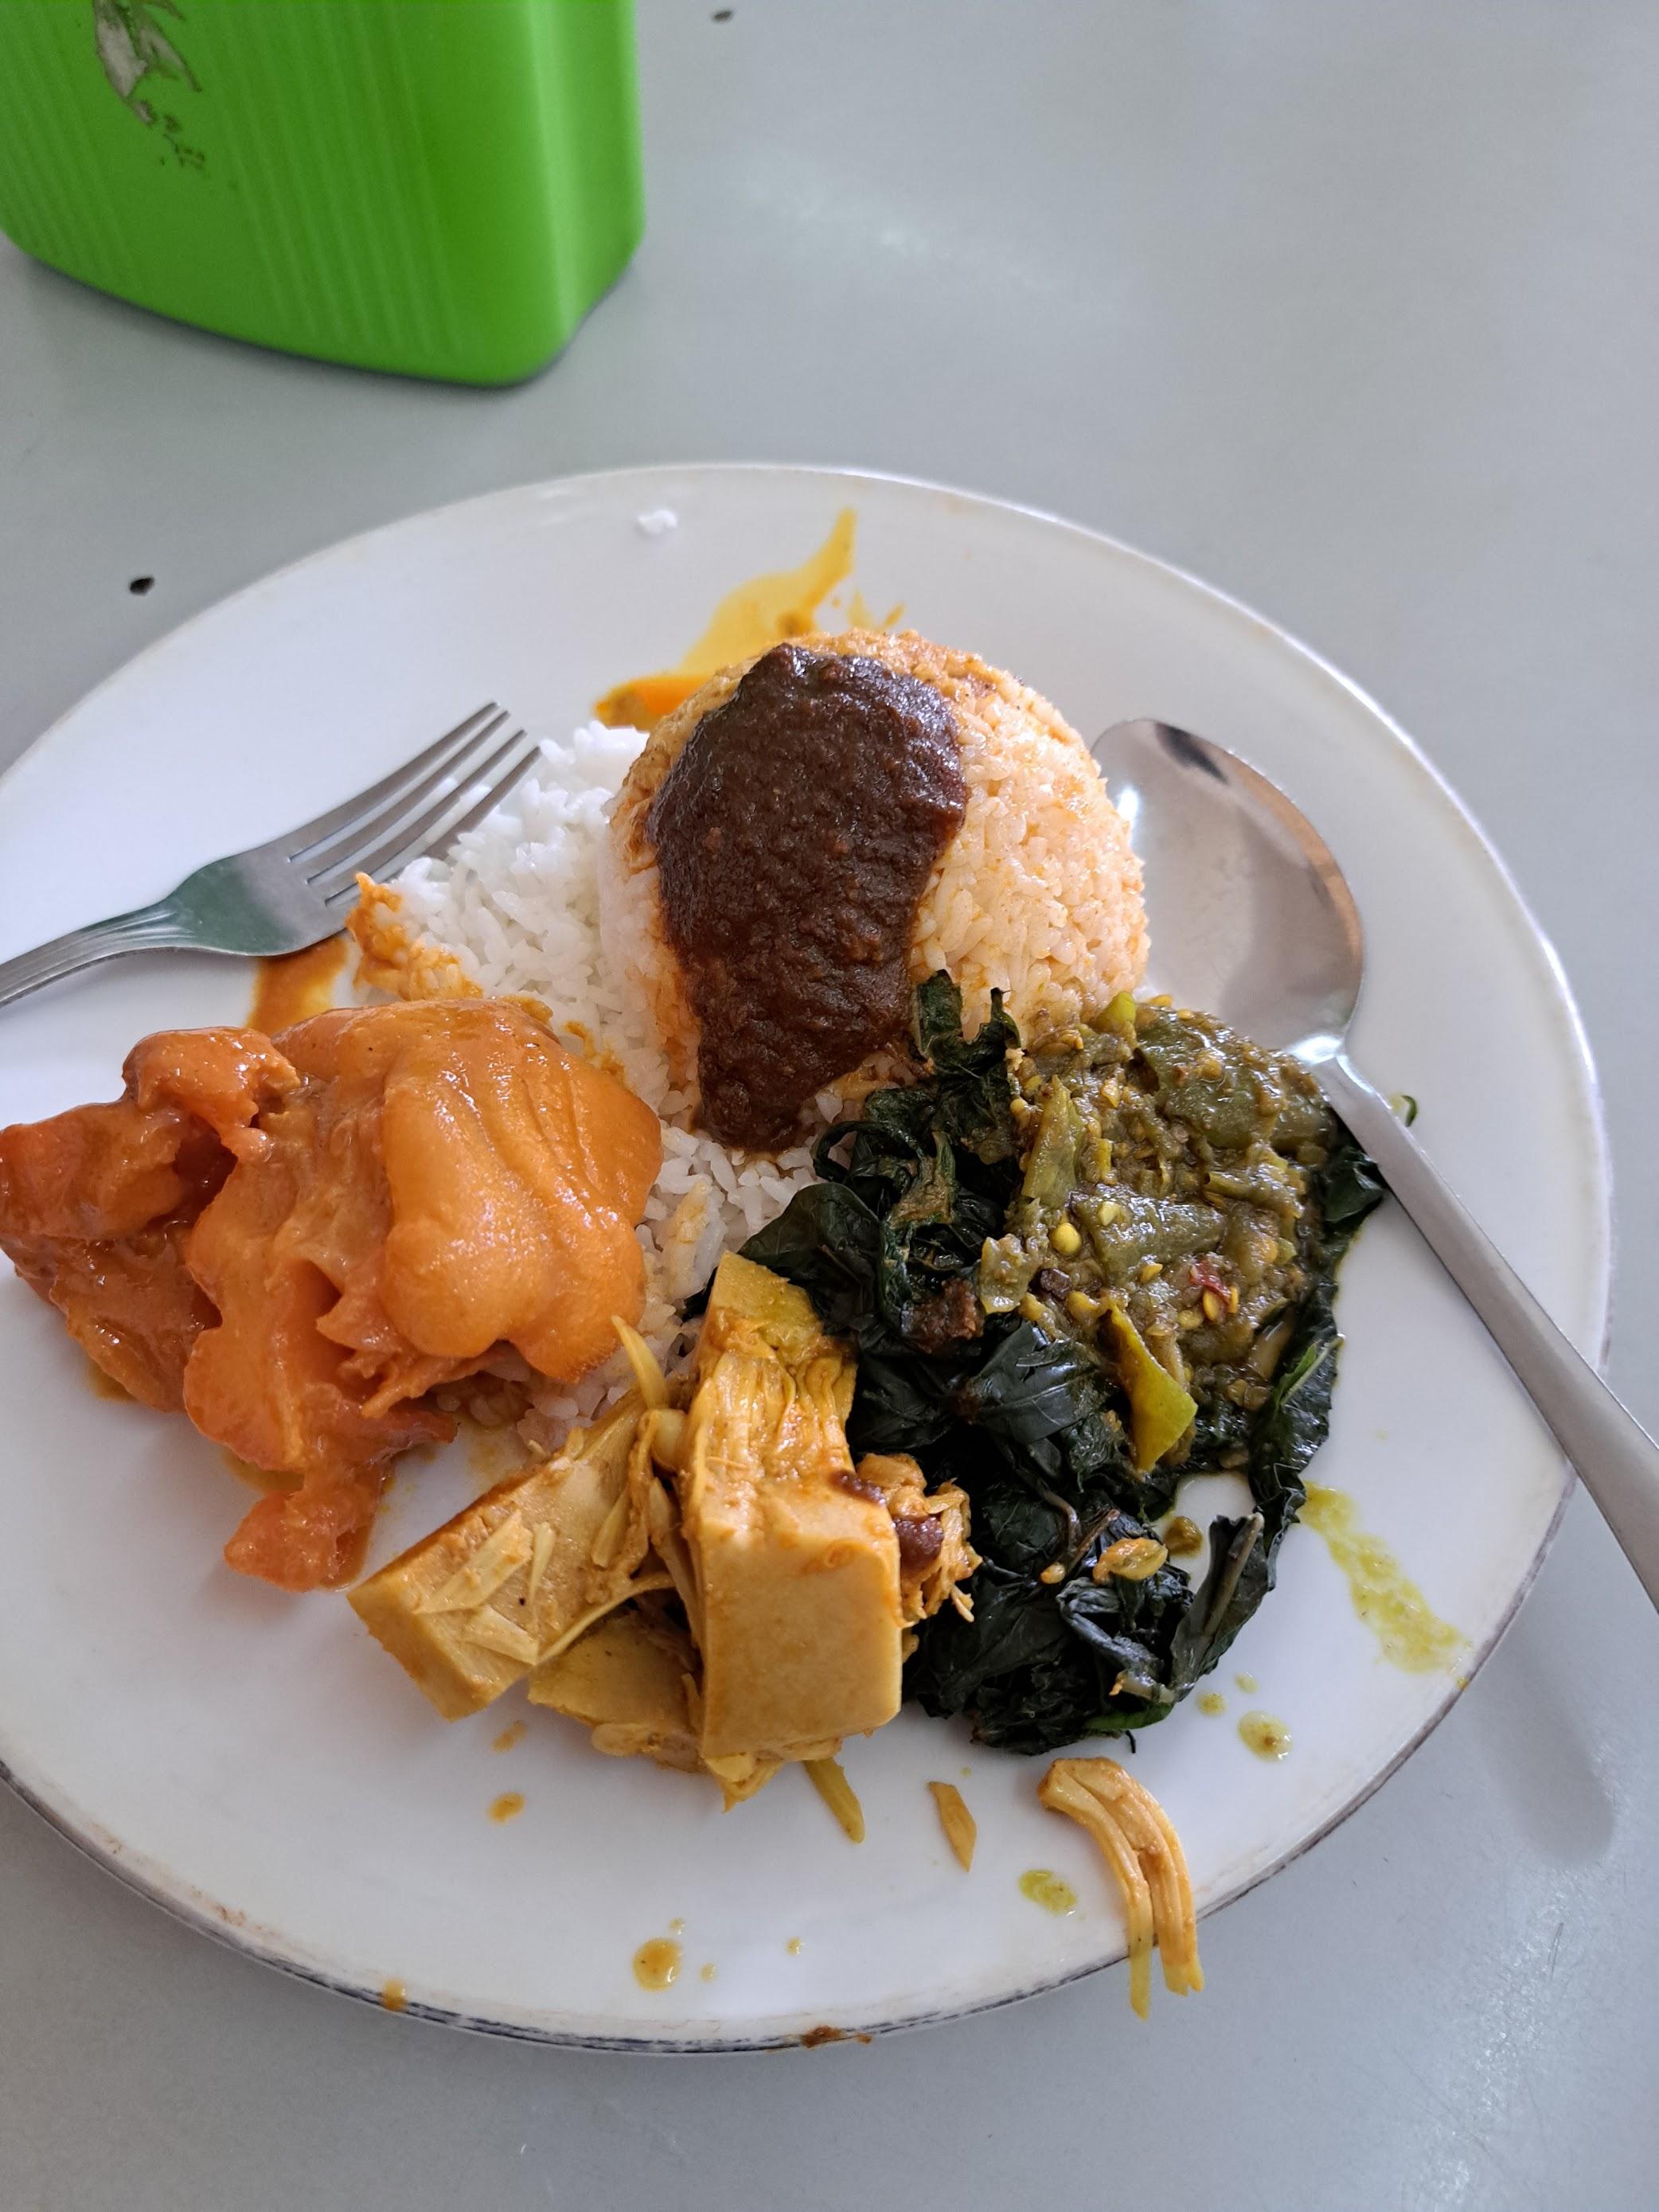 Rumah Makan Puri Minang review